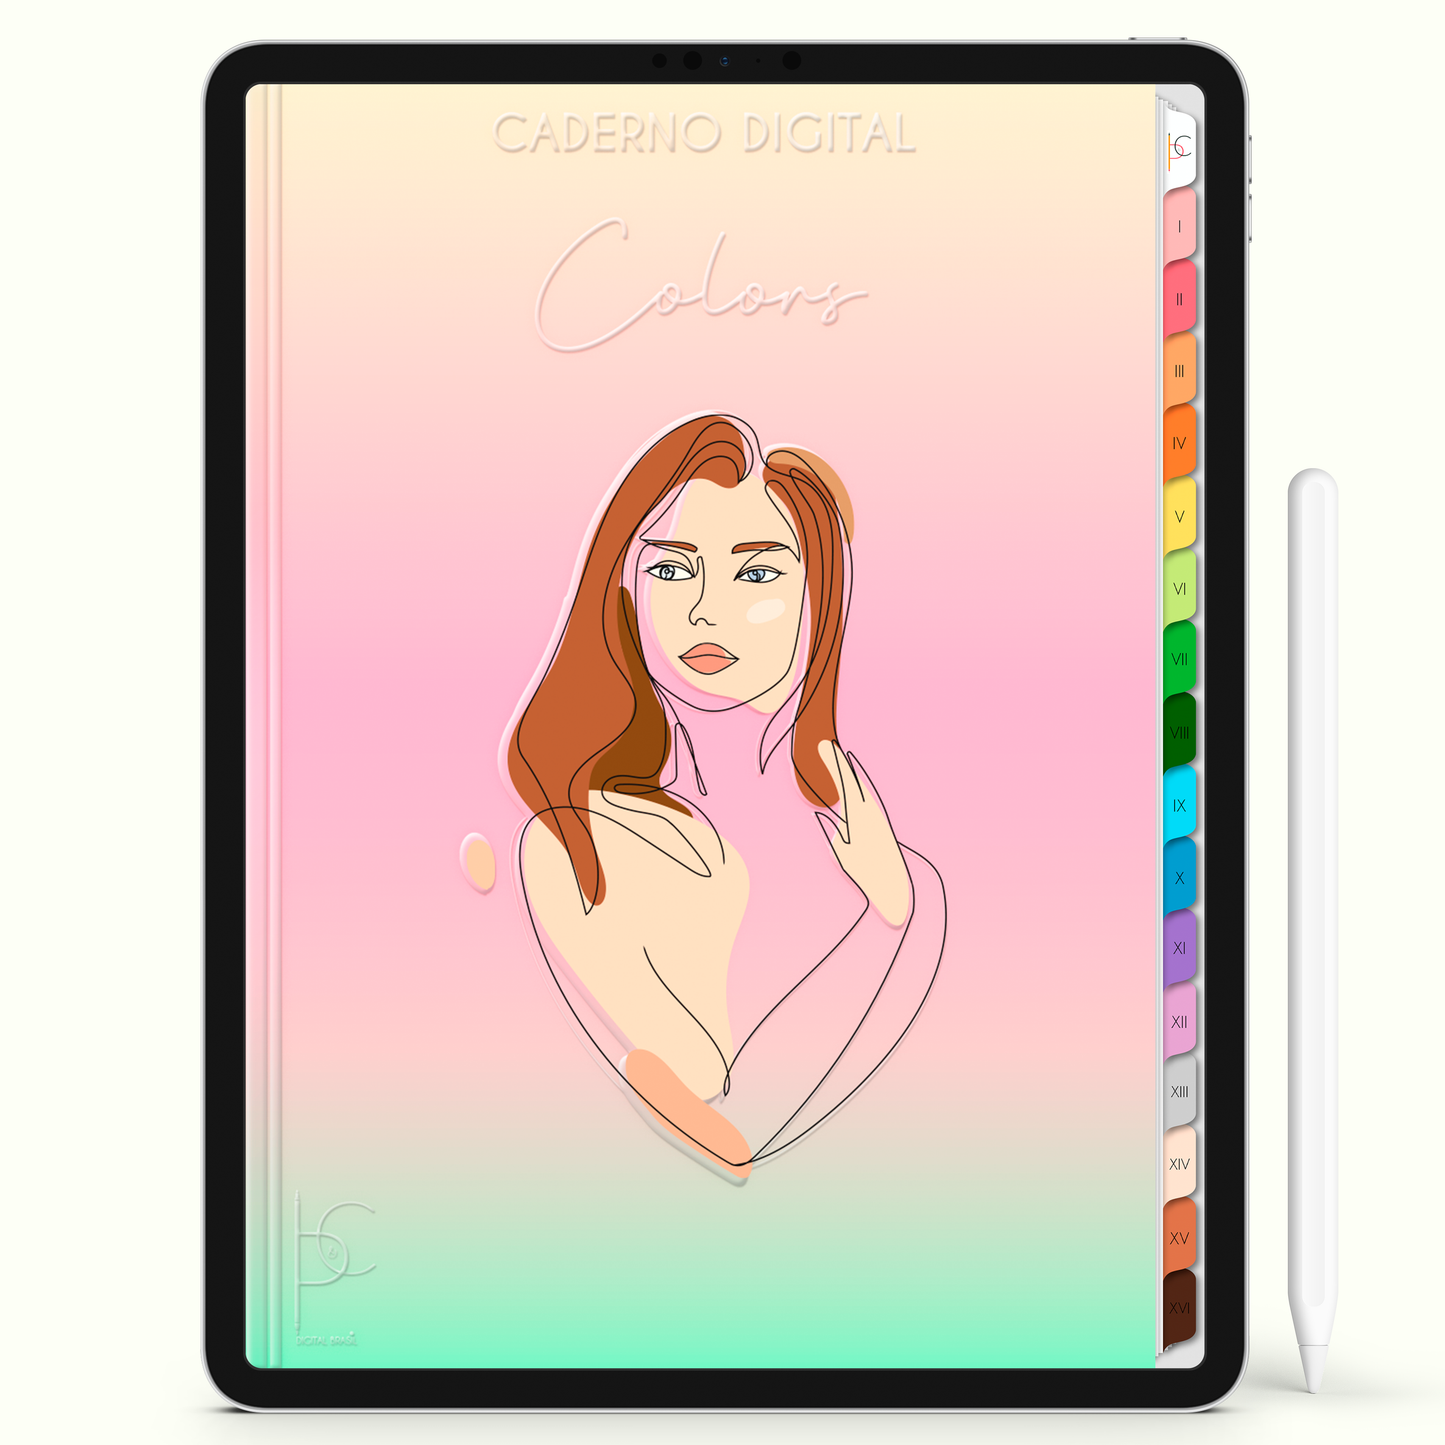 Caderno Digital Colors Diário de Estudos Feminine 16 Matérias • Para iPad e Tablet Android • Download instantâneo • Sustentável